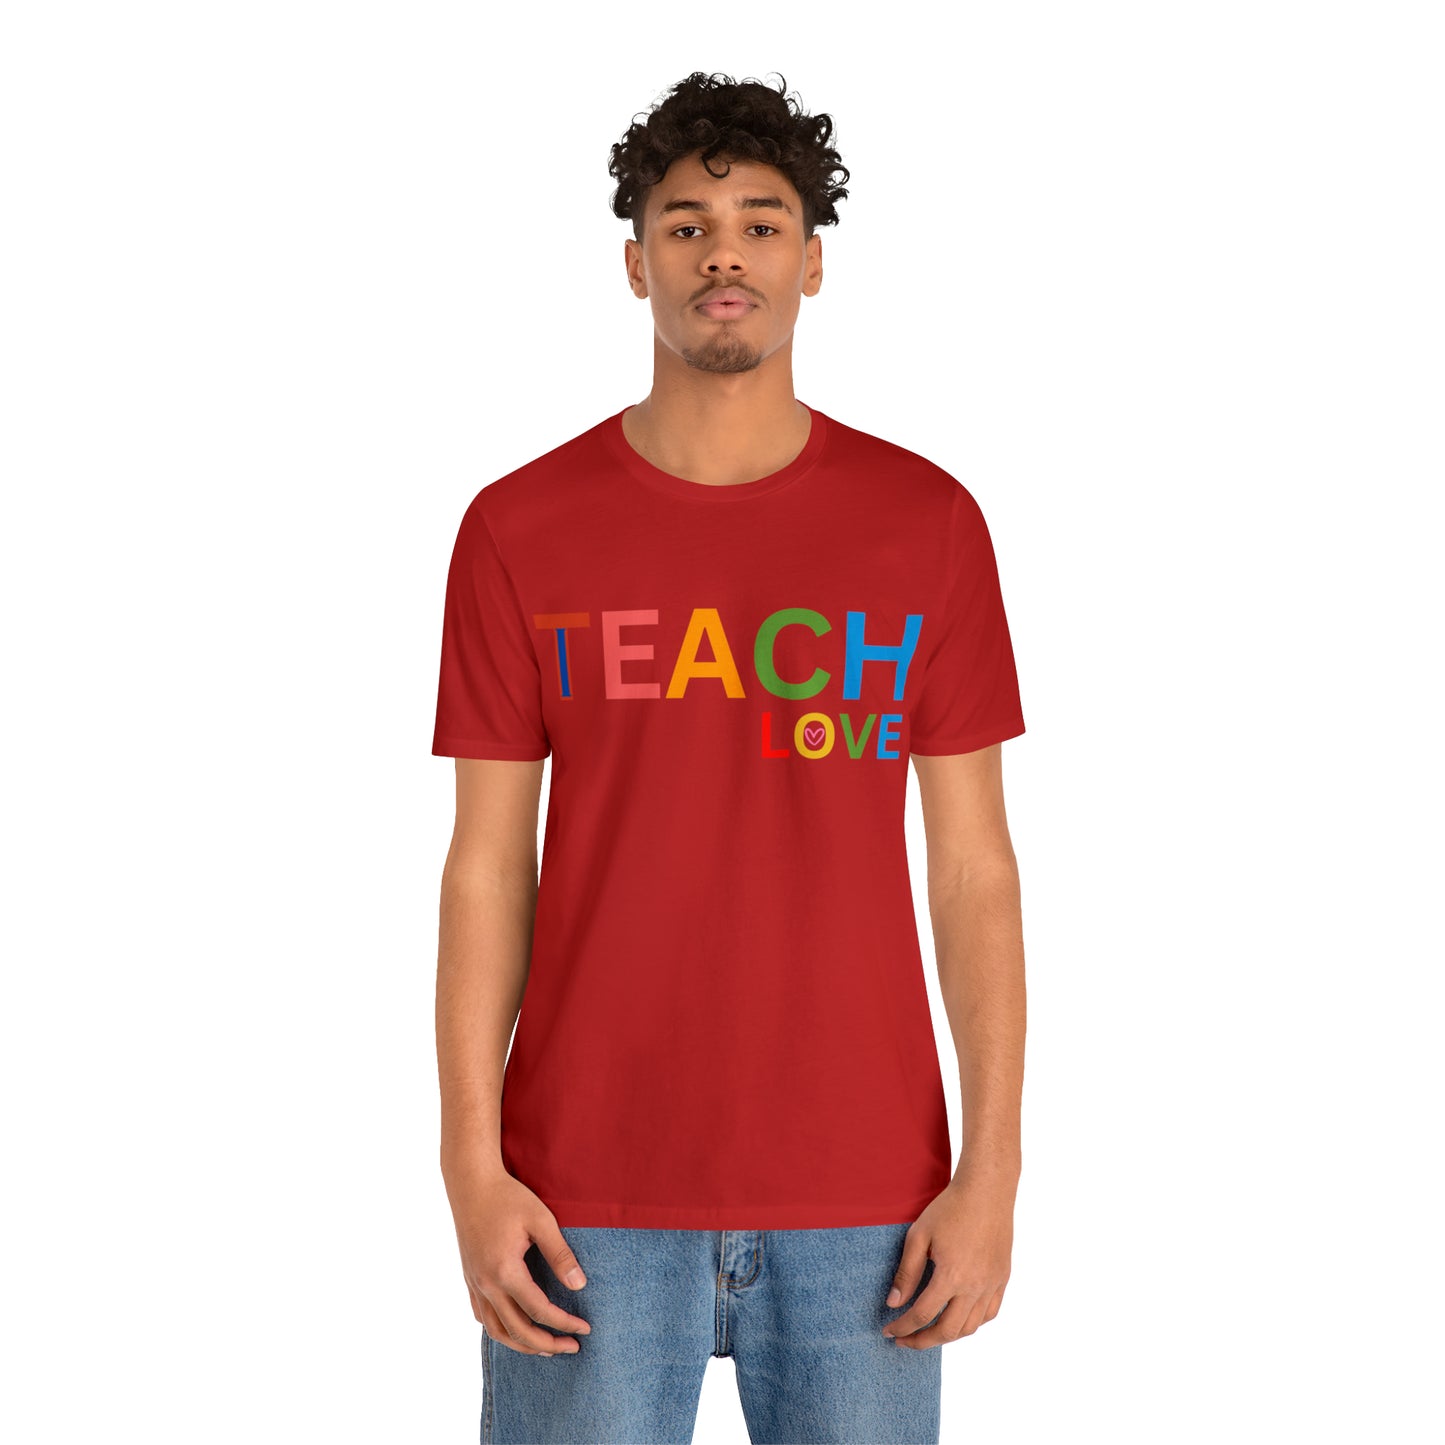 I Teach Love Shirt, Teacher Shirt, Teacher Appreciation Gift for Teachers